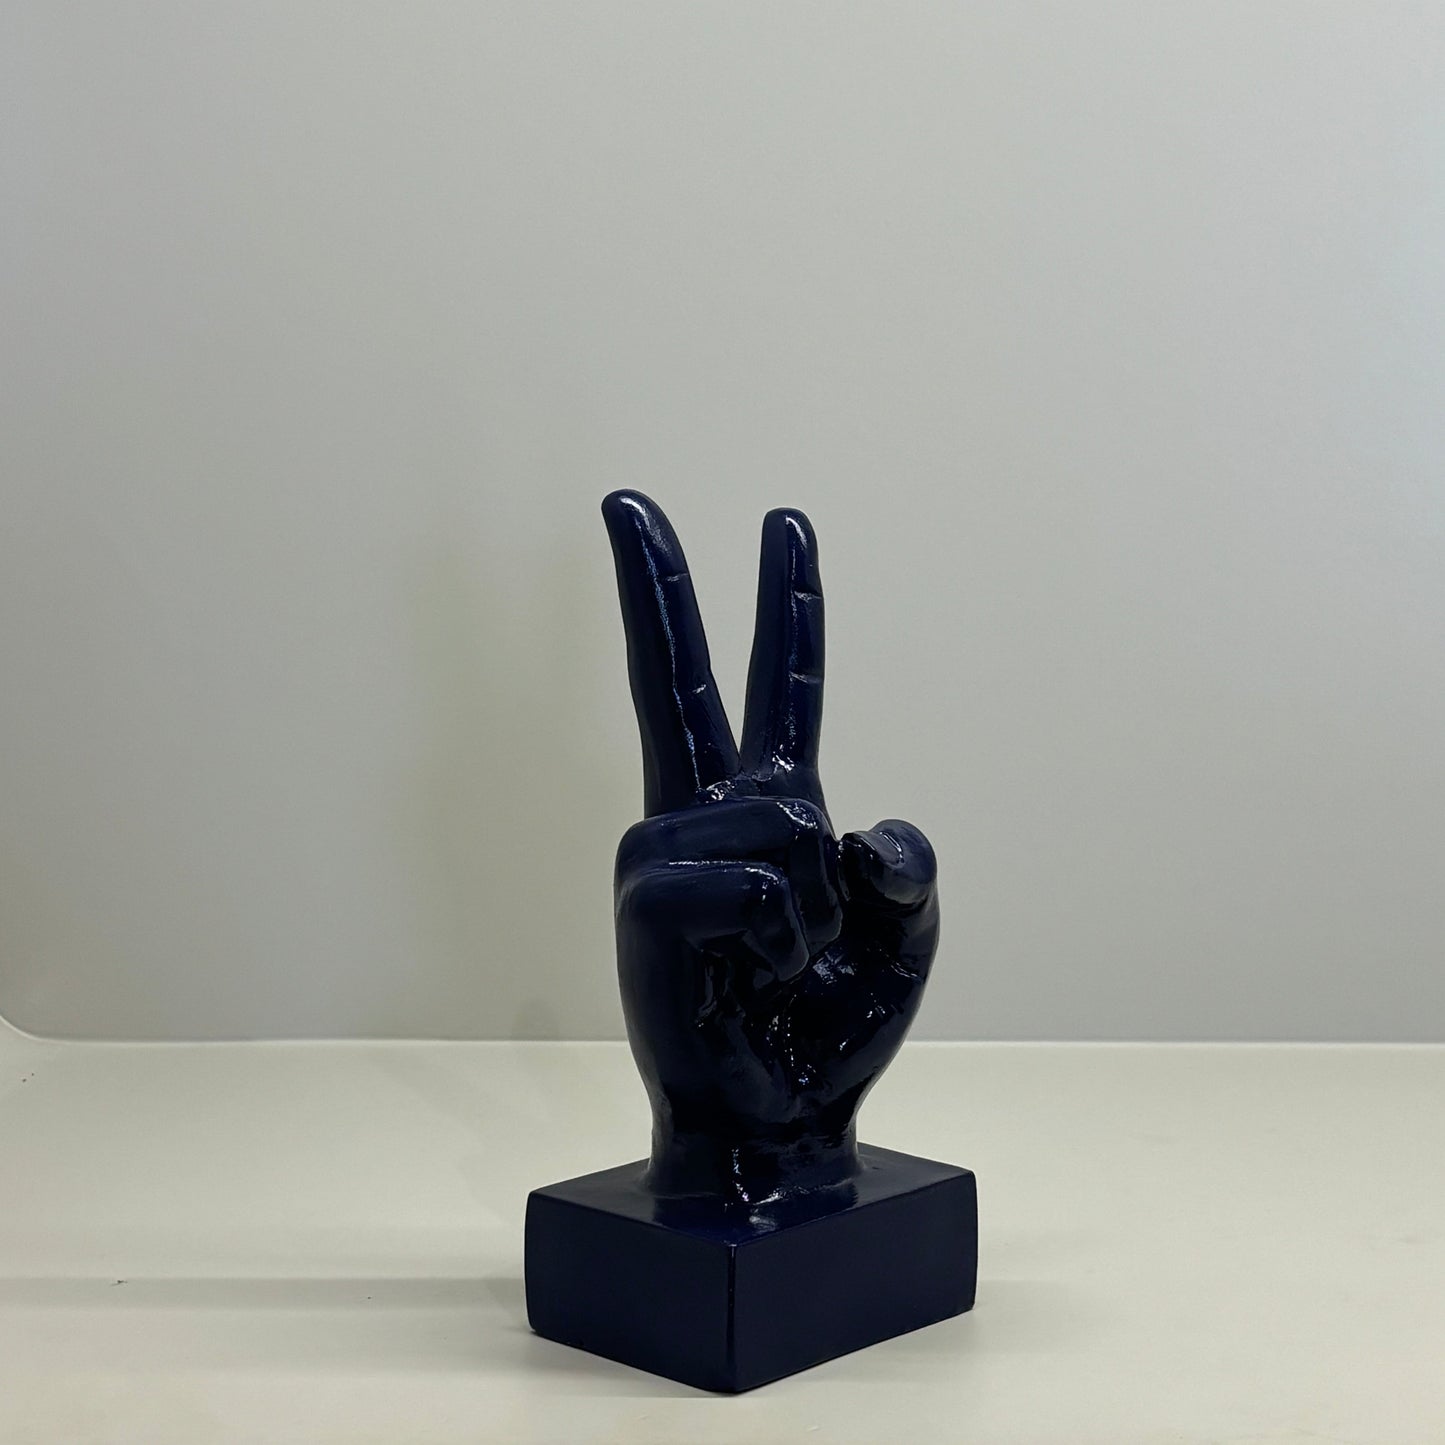 Poise Hand Gesture Sculpture